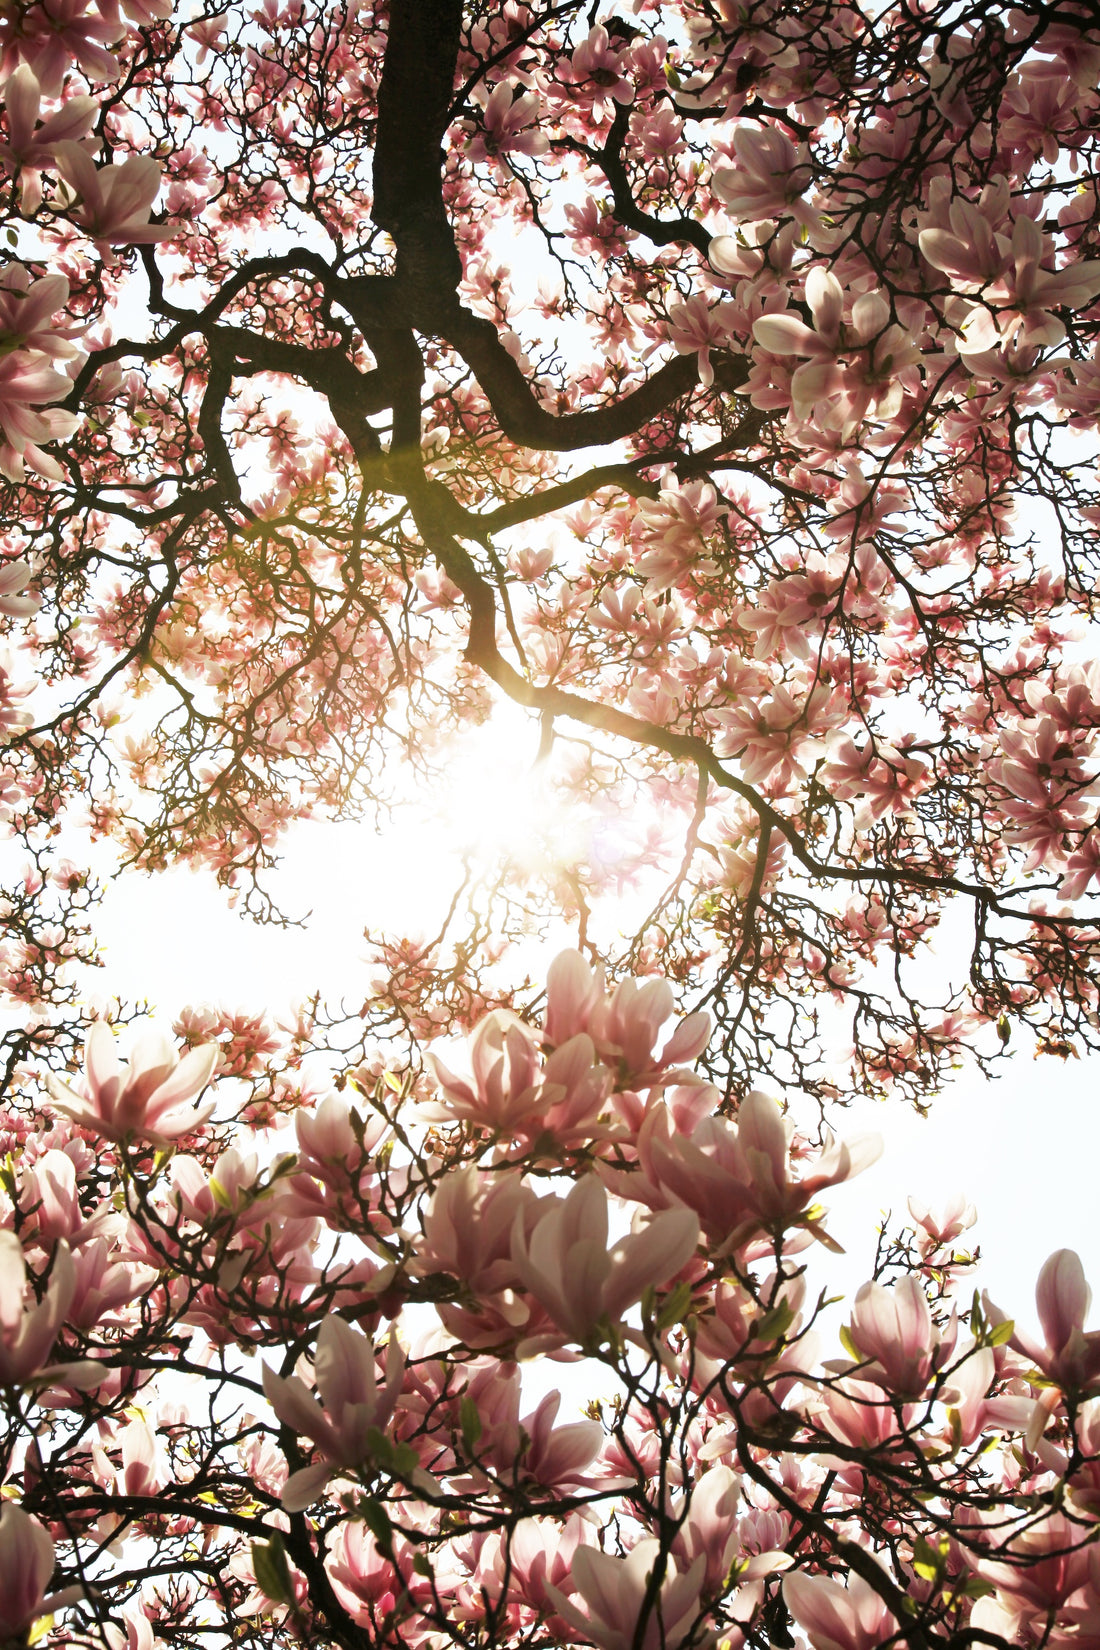 Comment sont produits les magnolias ?